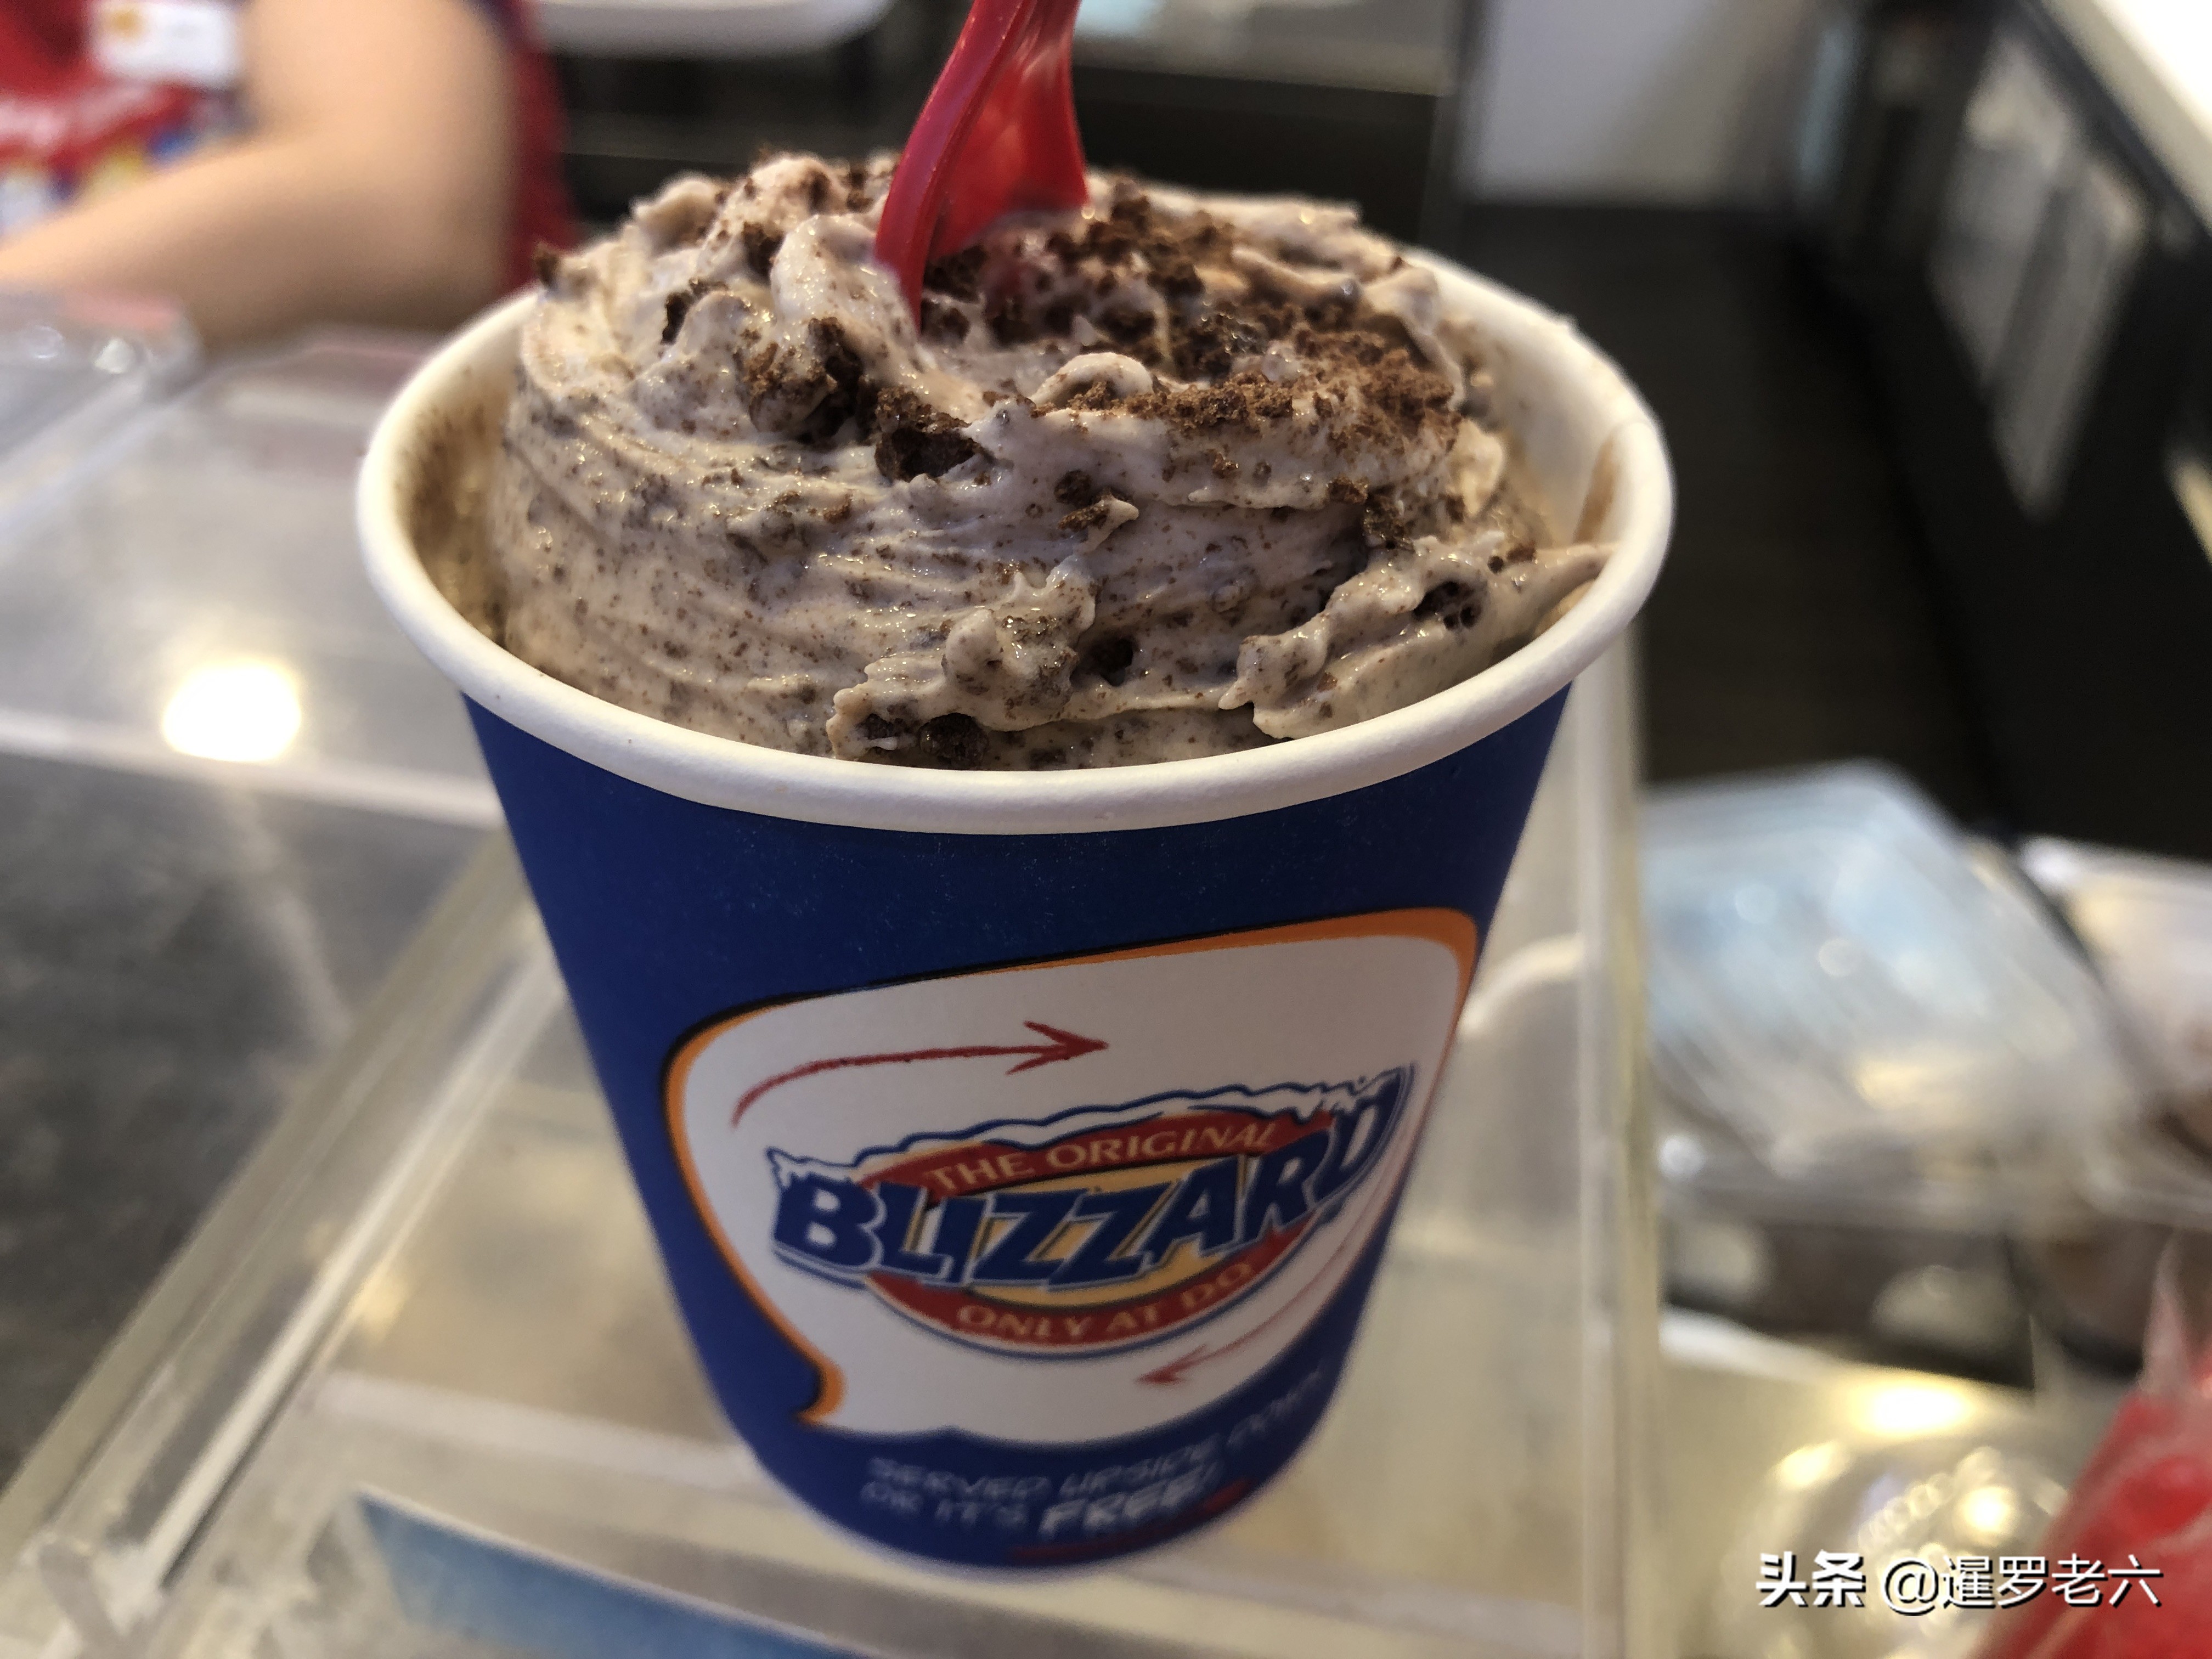 在泰国拉抛路的尚泰商场里发现dq冰淇淋新出了"阿华田"口味的暴风雪